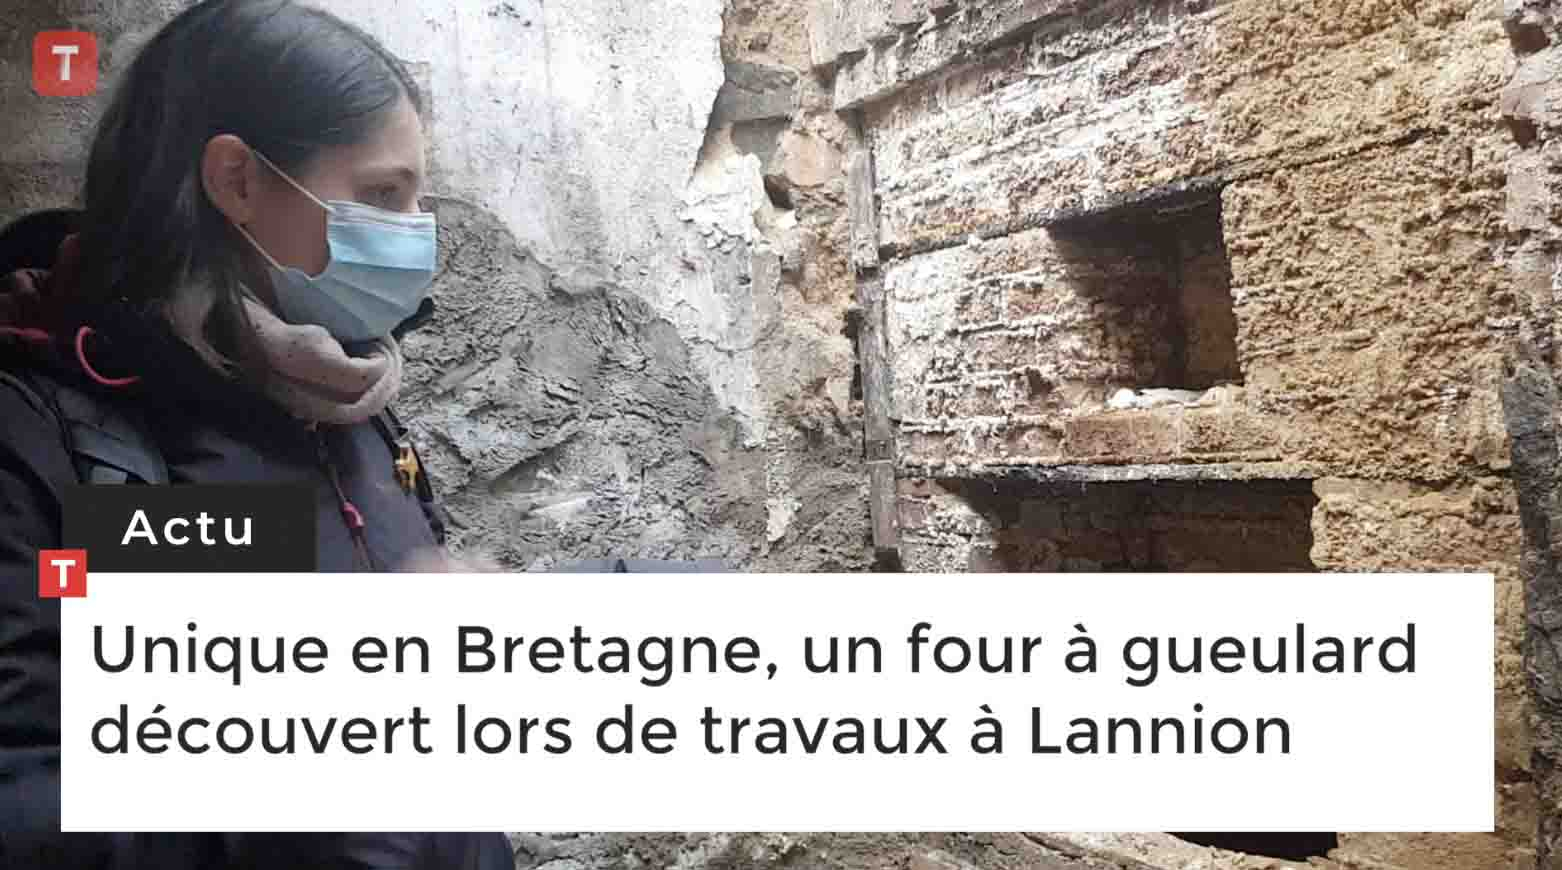 Unique en Bretagne, un four à gueulard découvert lors de travaux à Lannion (Le Télégramme)